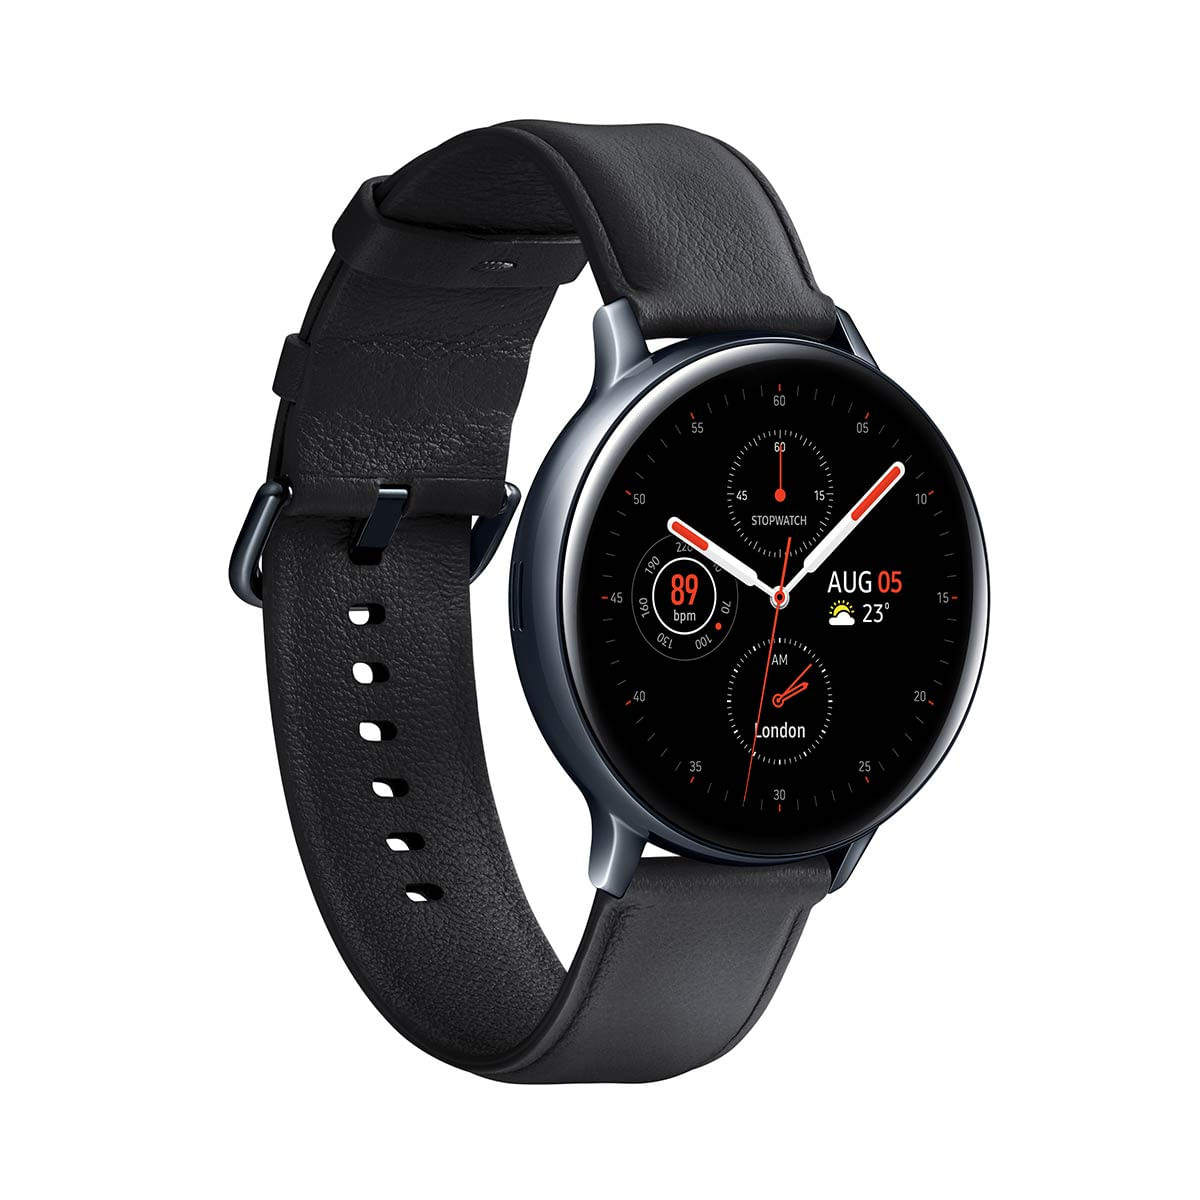 kit-smartwatch-samsung-2-pecas--galaxy-watch3-41mm-lte-bronze---galaxy-active2-lte-44mm-preto-3.jpg